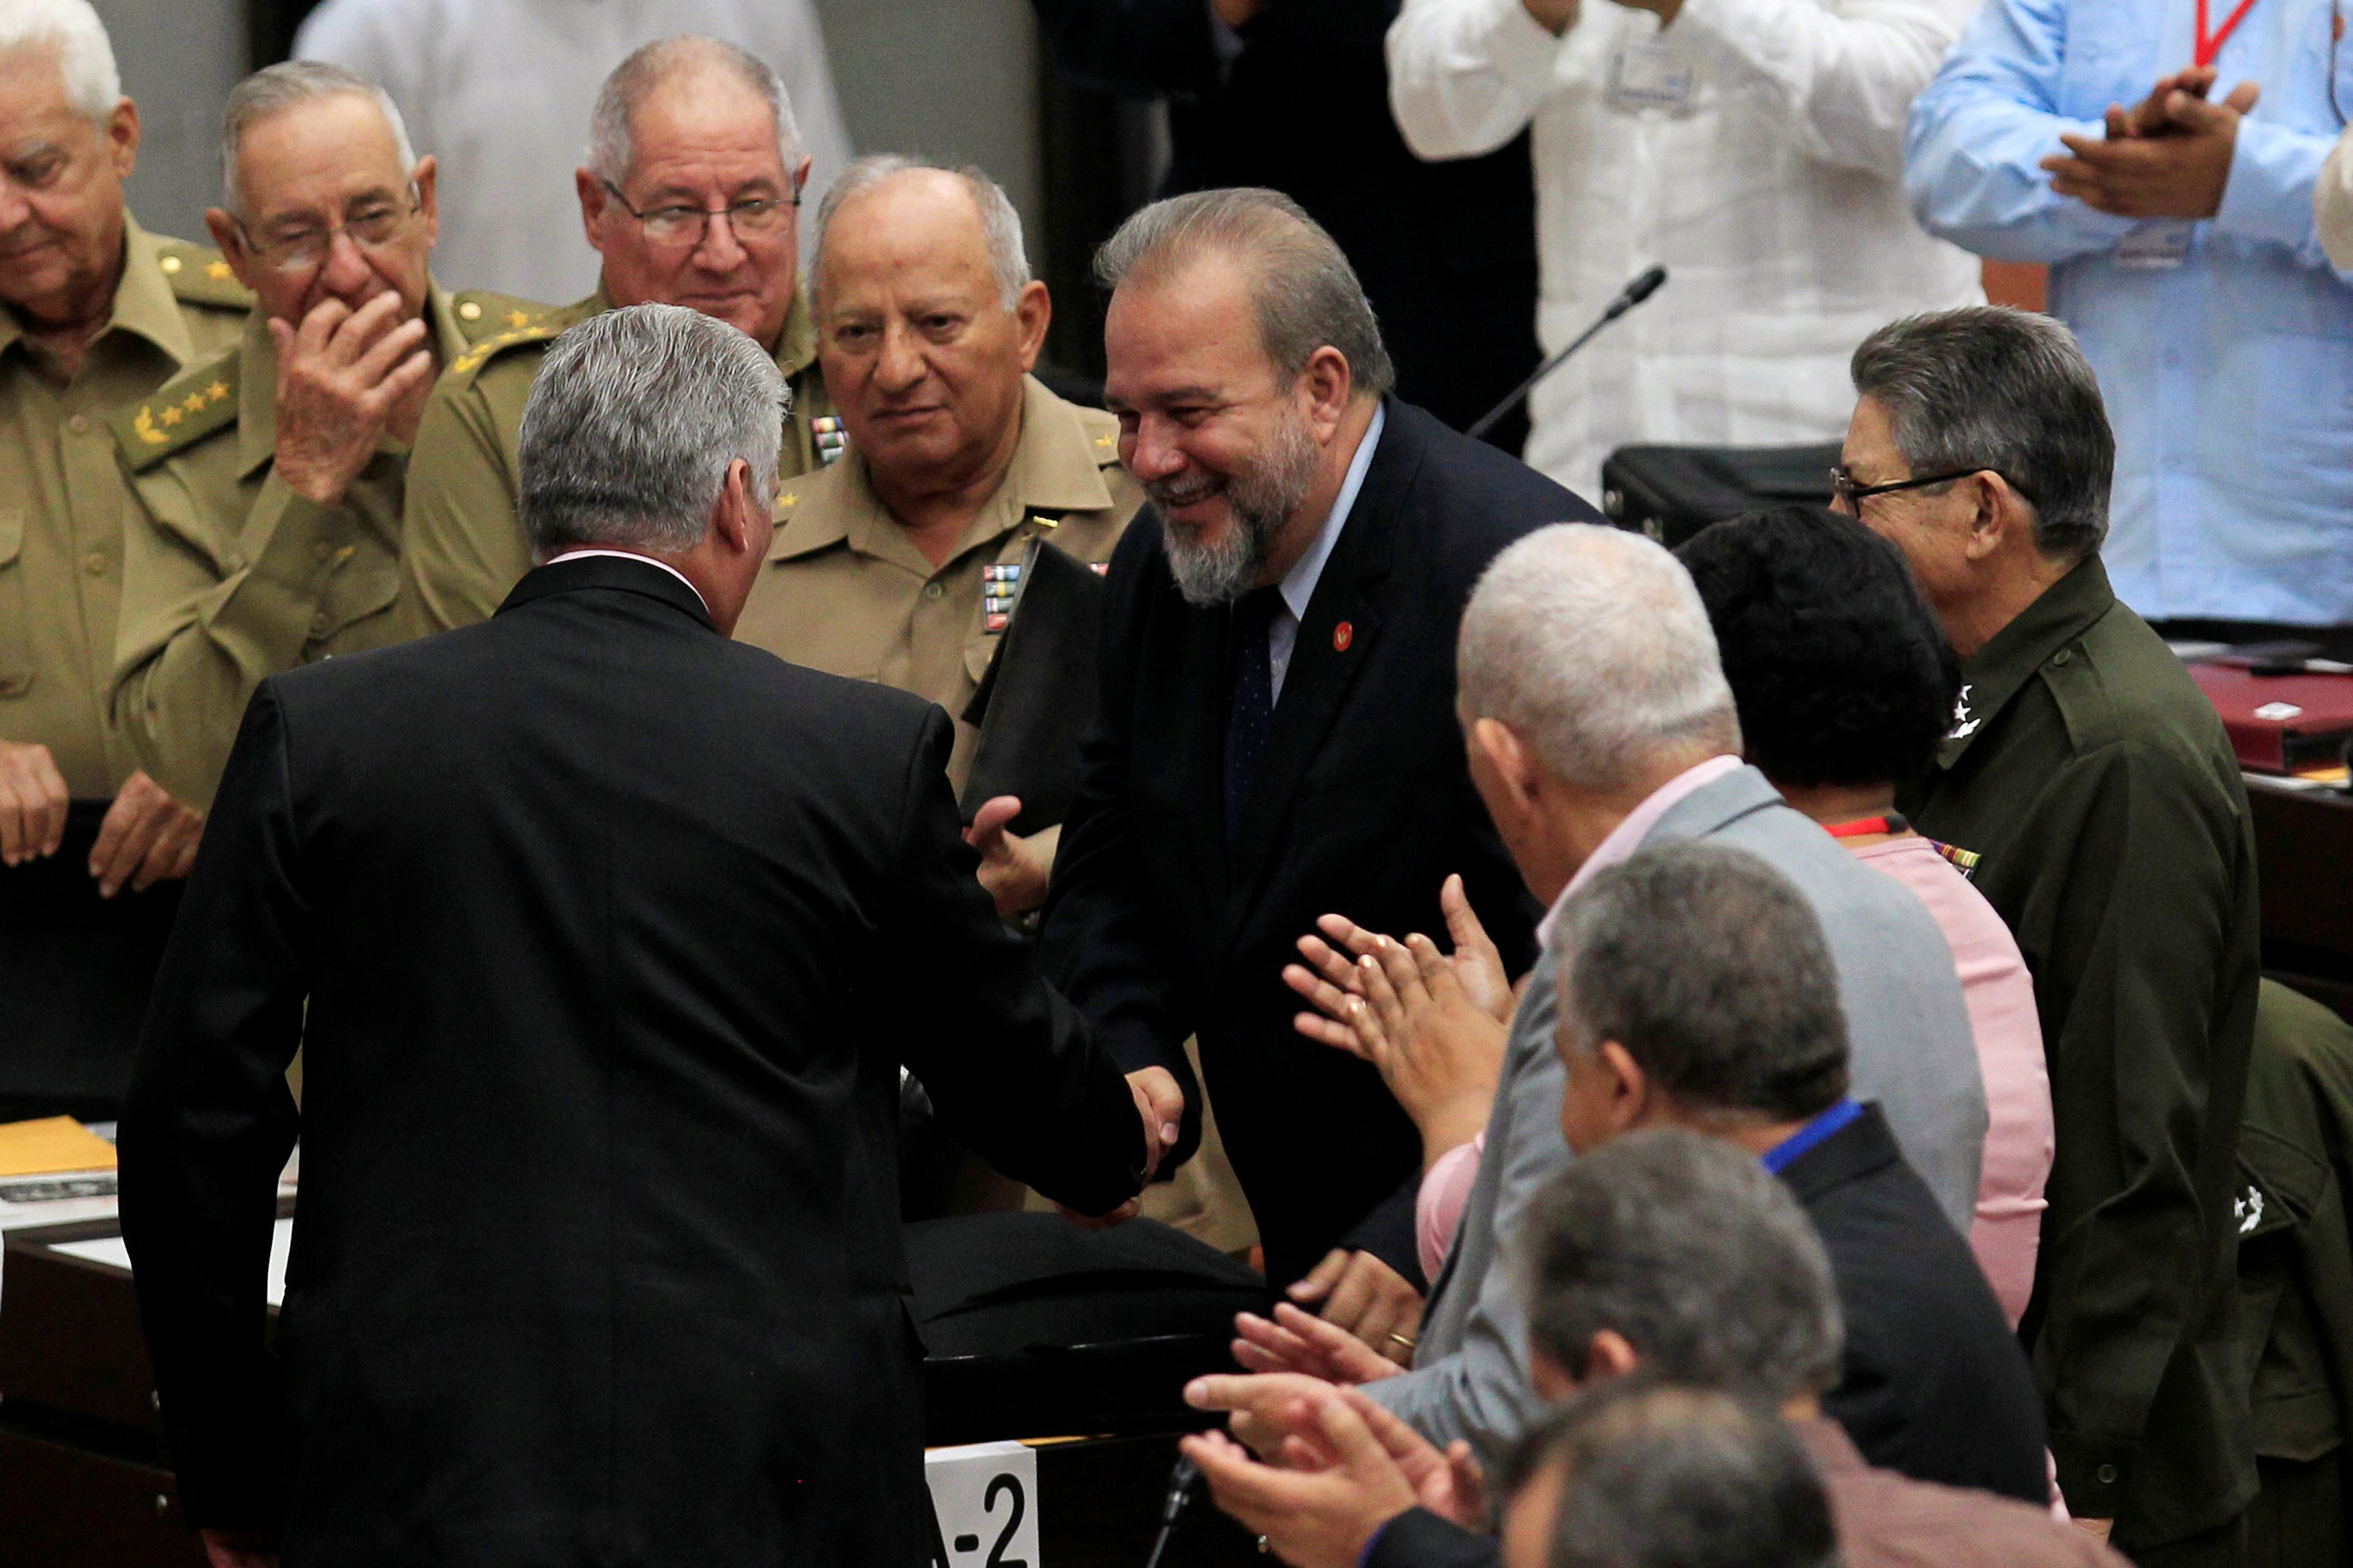 El presidente cubano Díaz-Canel y el ministro de Turismo Marrero, nombrado primer ministro del país, se dan la mano durante la sesión ordinaria de la Asamblea Nacional en La Habana.